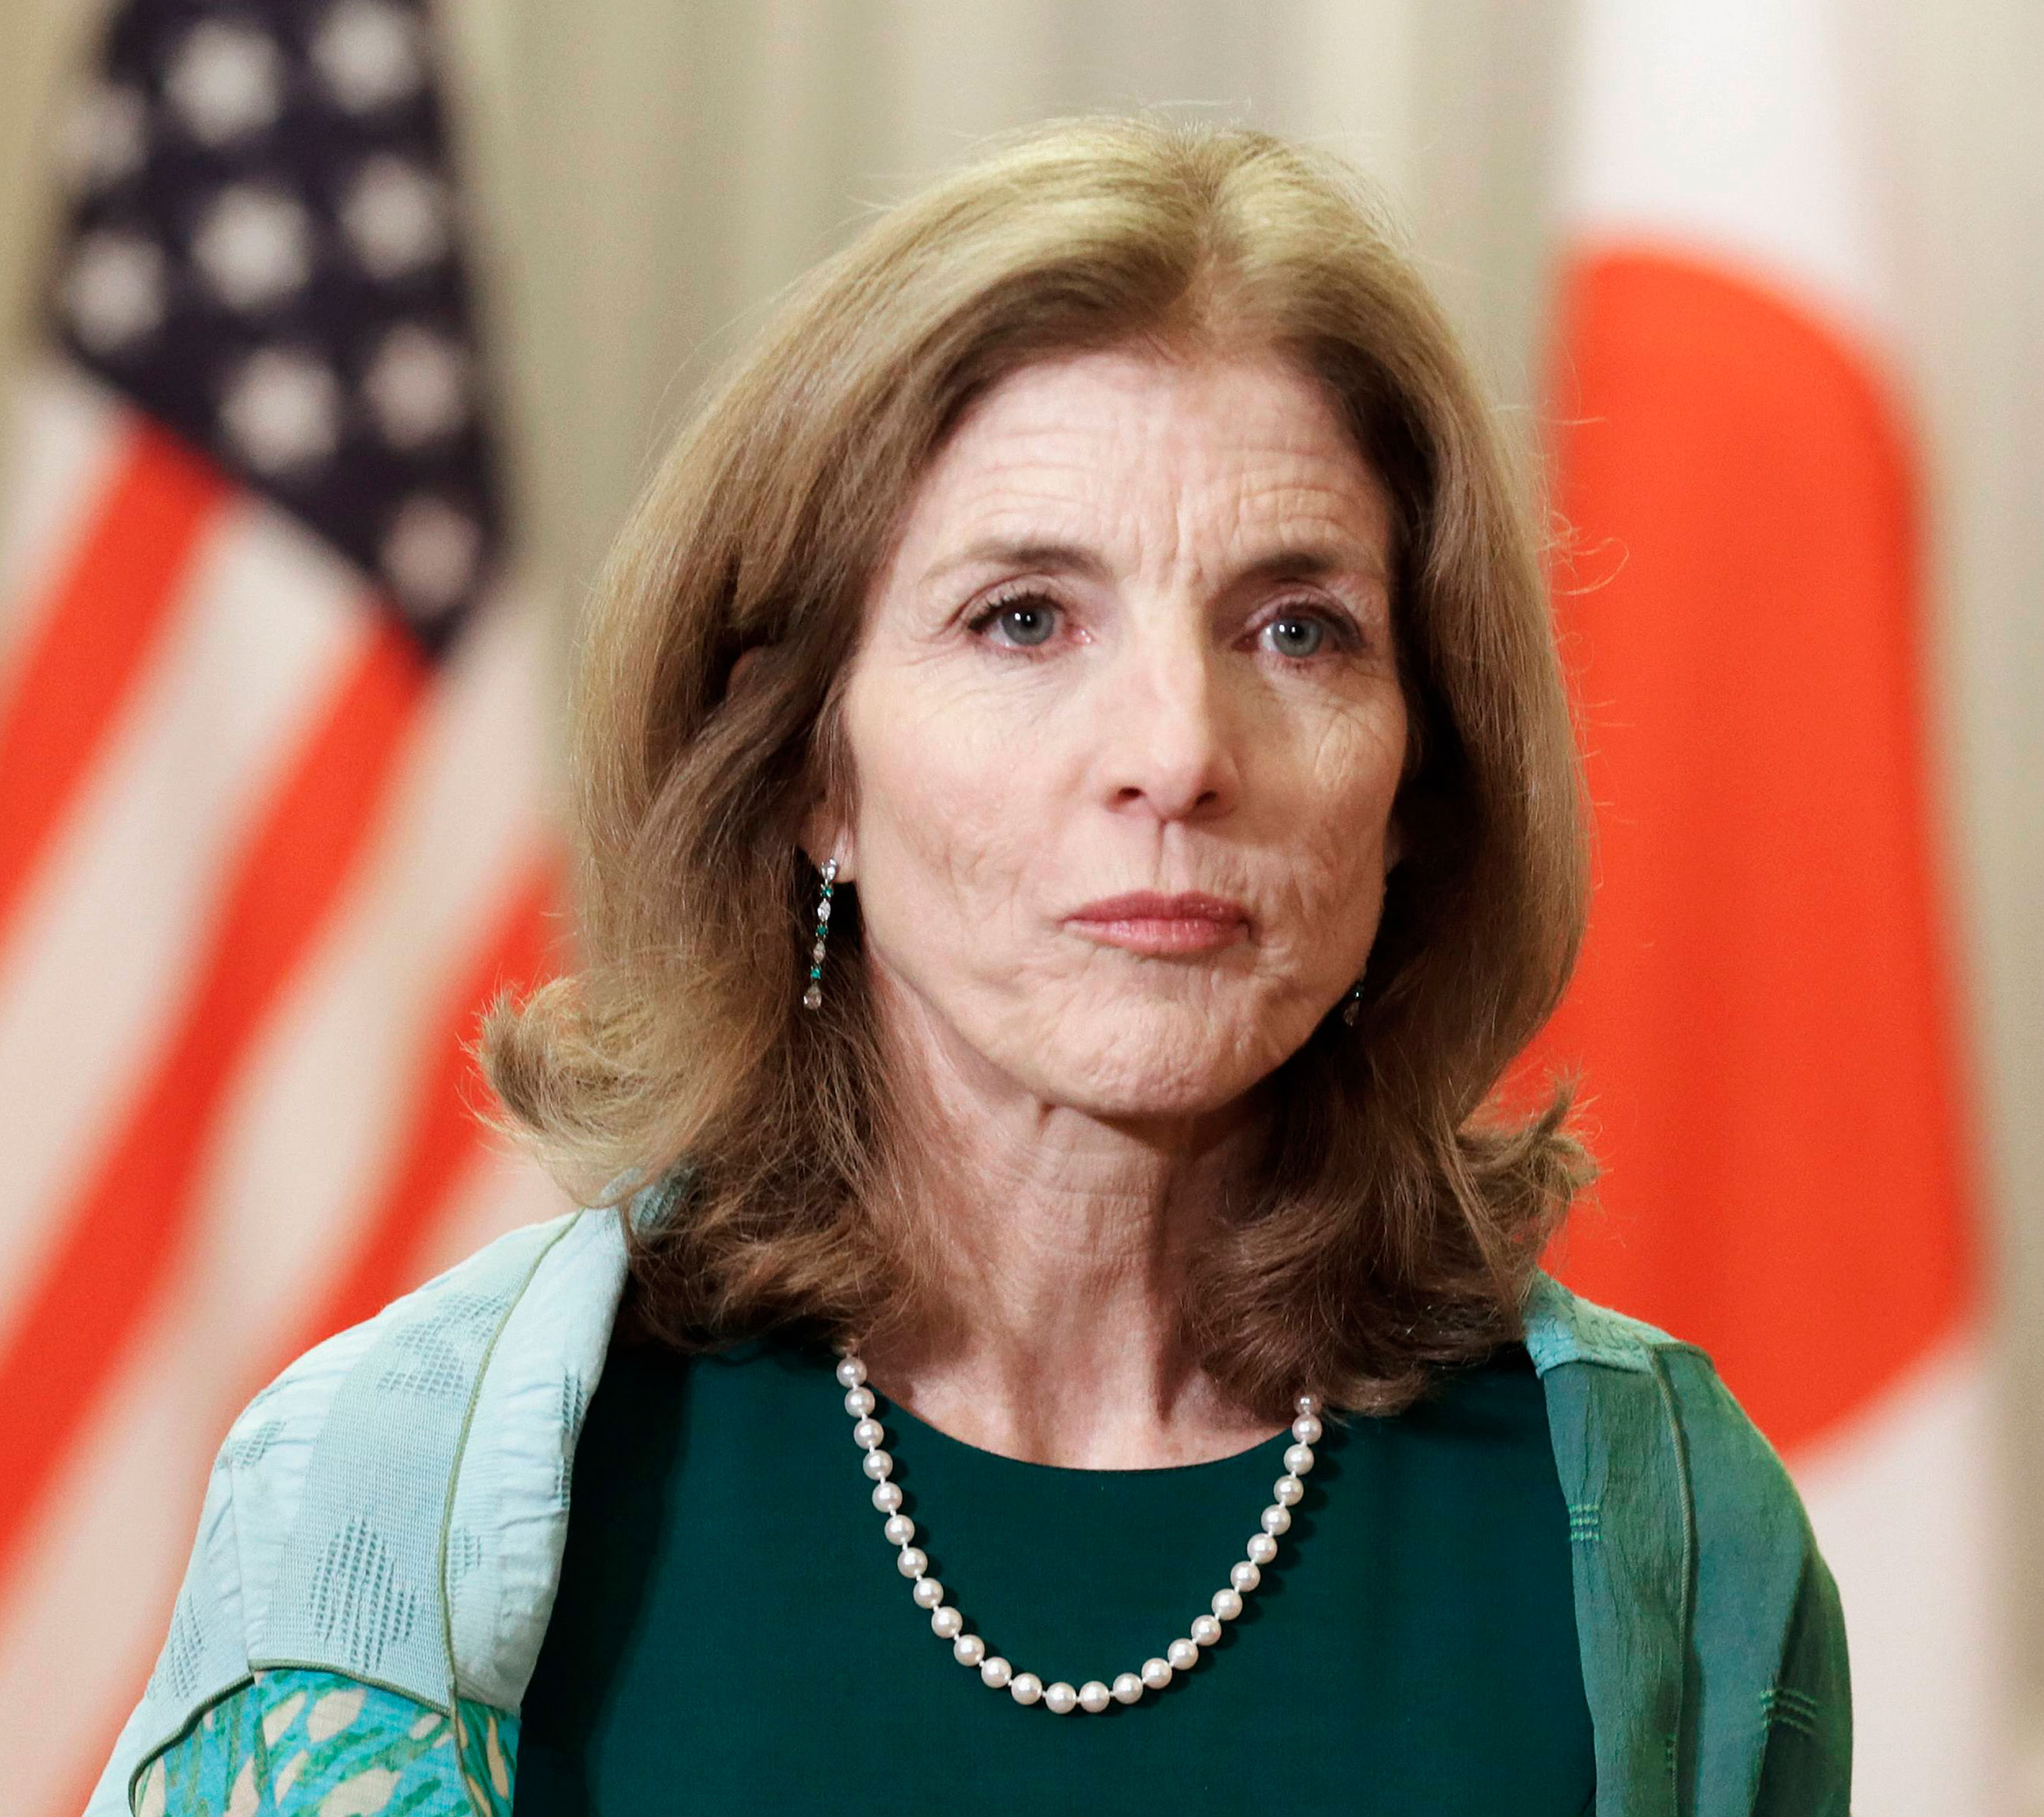 Investigan amenazas contra Caroline Kennedy, embajadora de EEUU en Japón